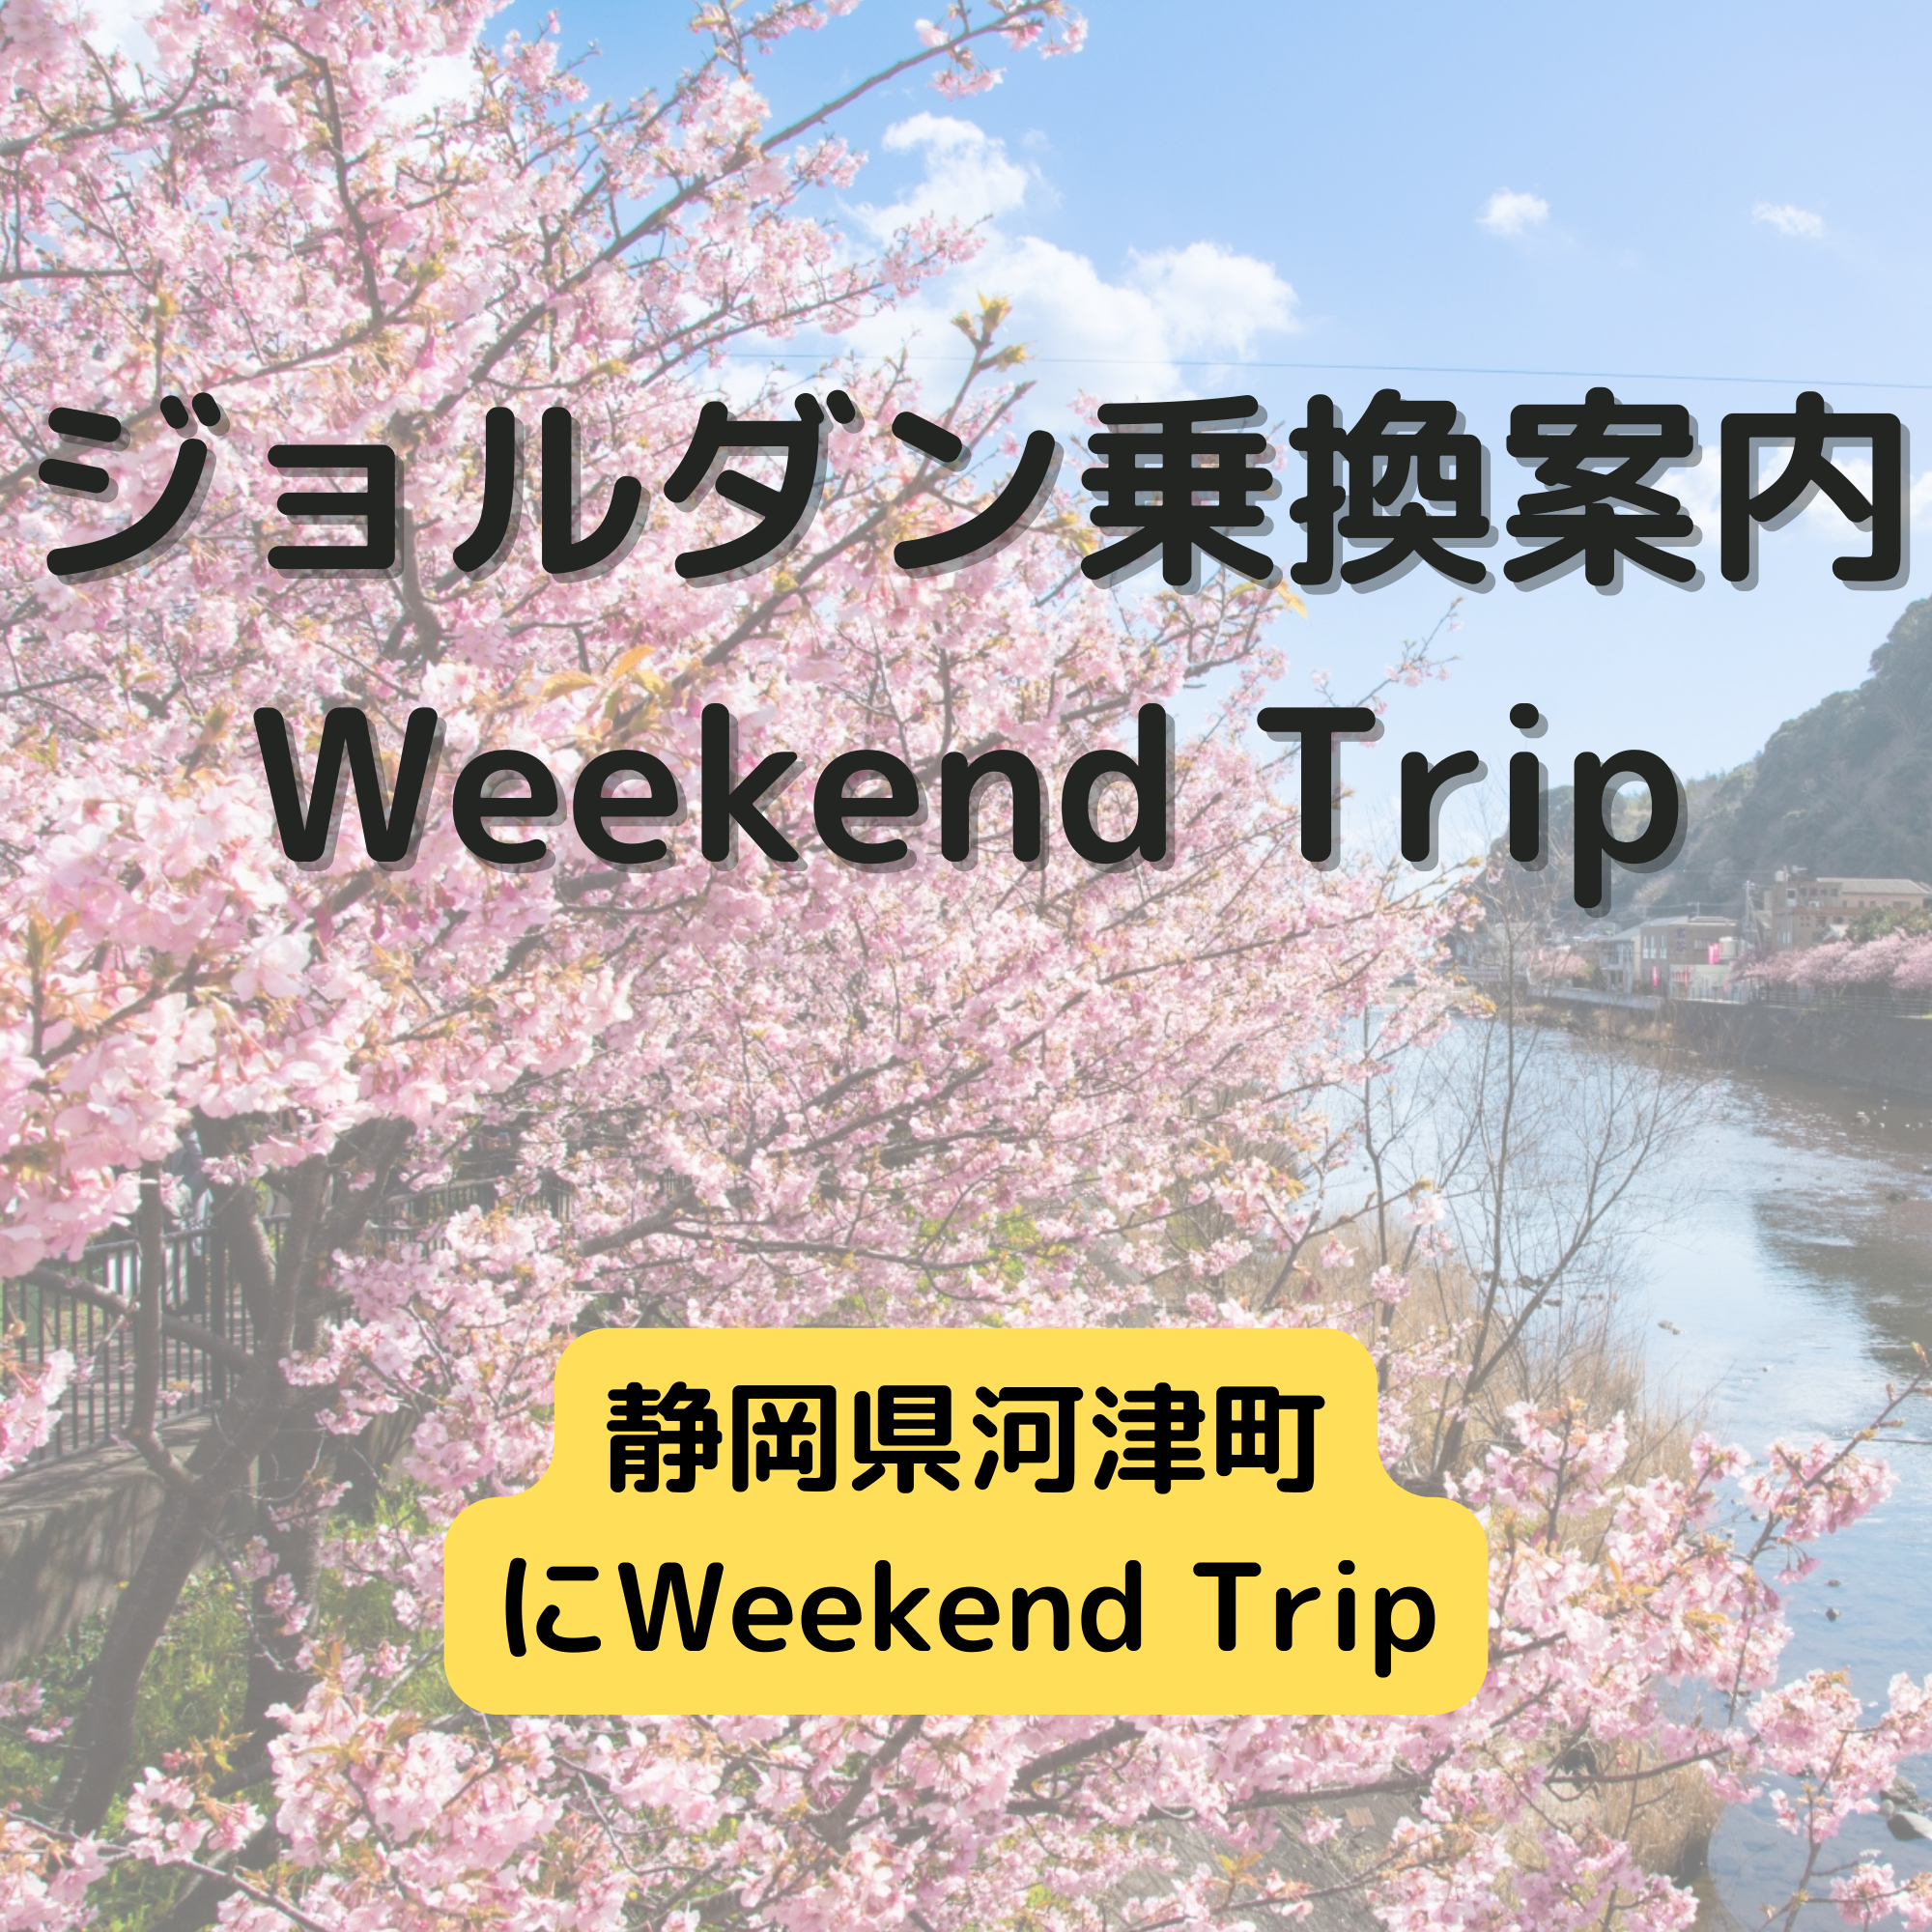 ジョルダン乗換案内　Weekend Trip-静岡県河津町 -